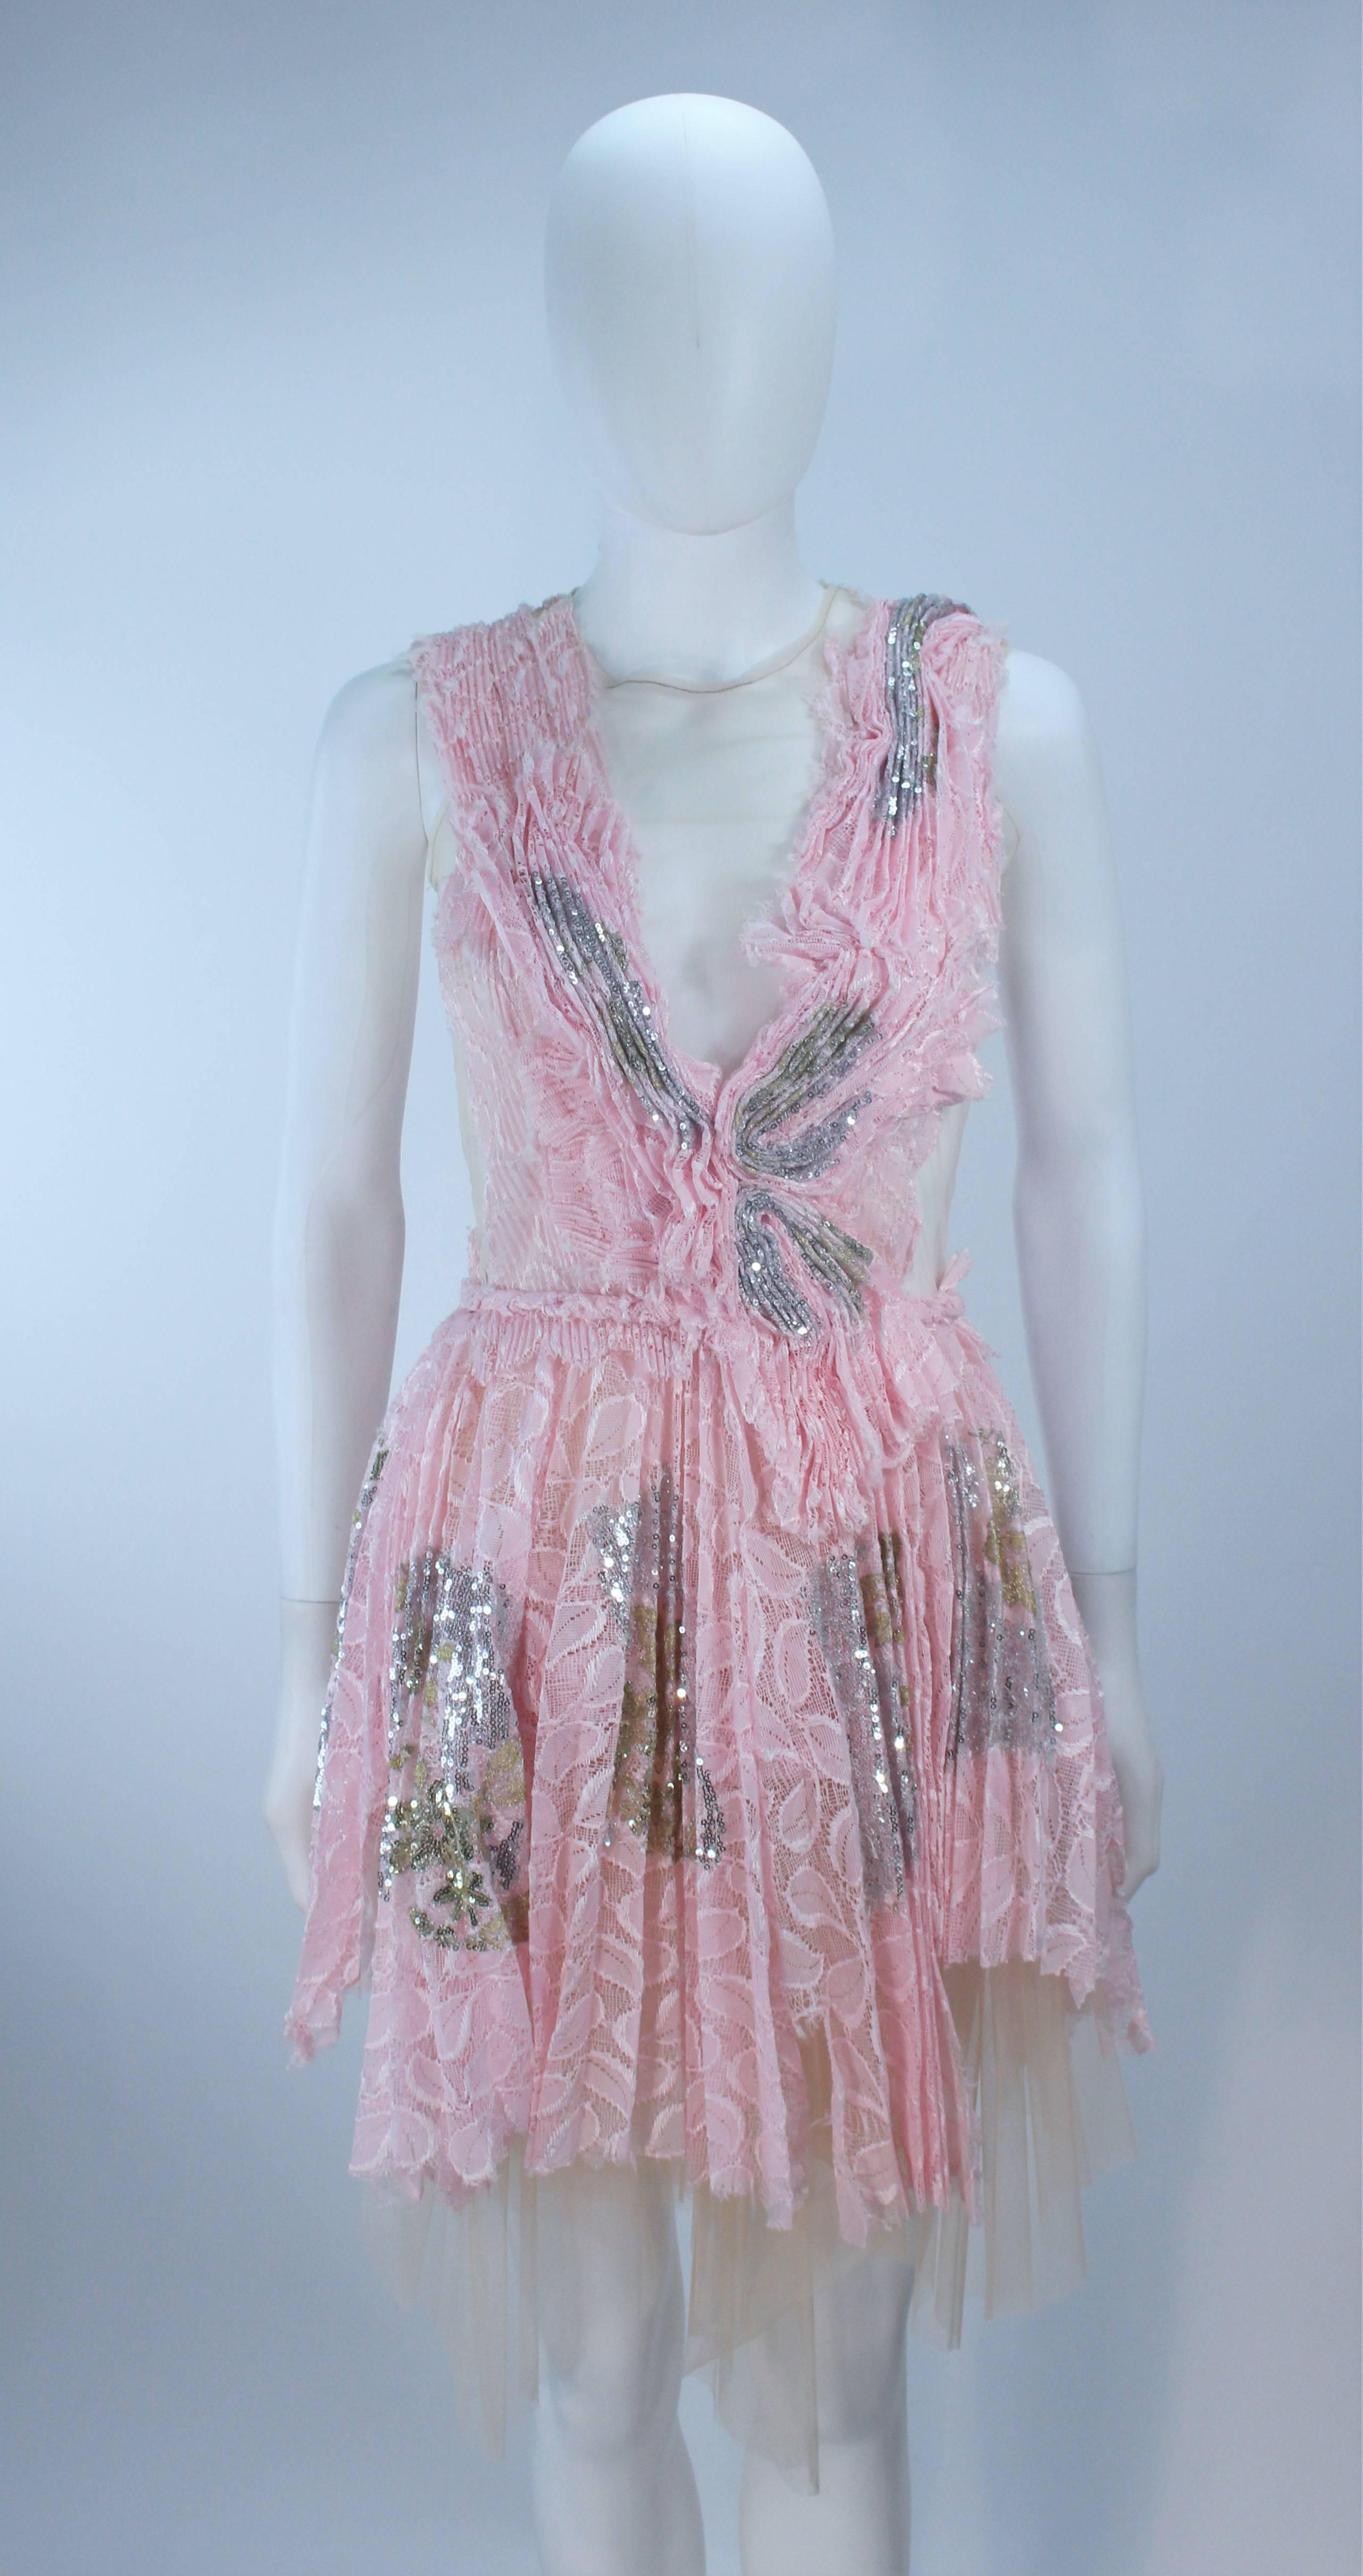 Gris MORALES Robe de cocktail rose transparente avec appliques et paillettes Taille 2 en vente